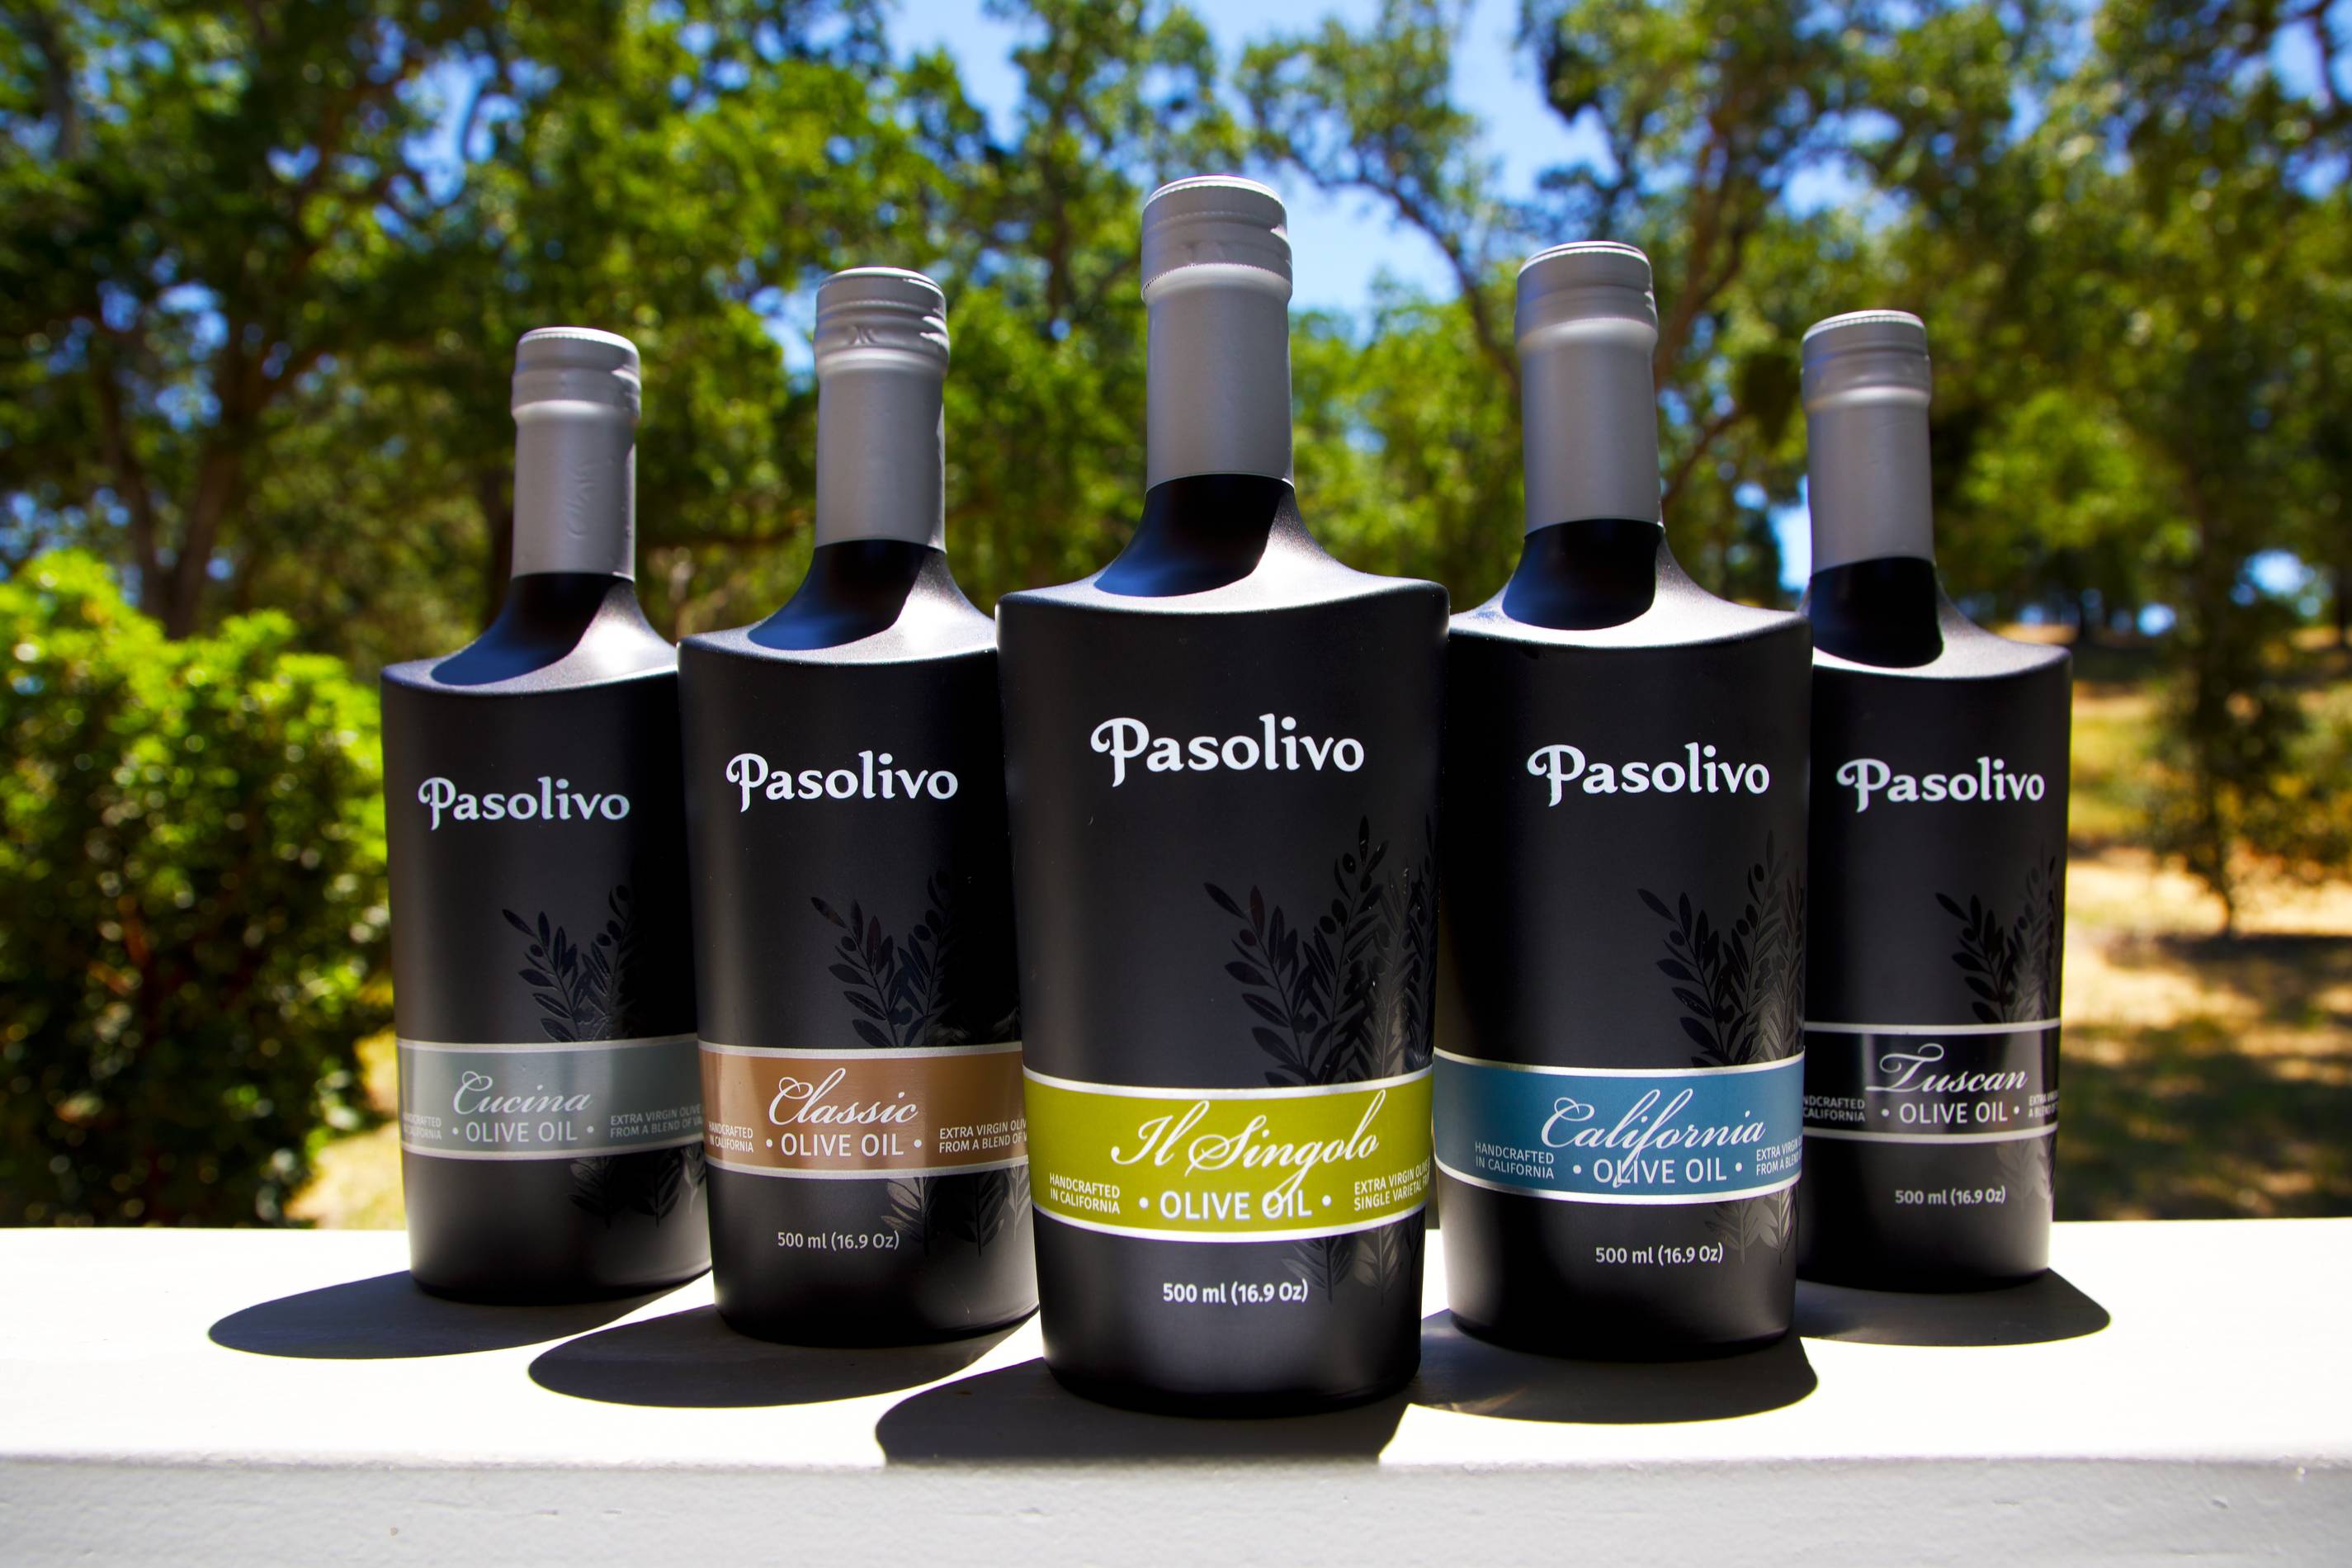 Pasolivo EVOO bottles